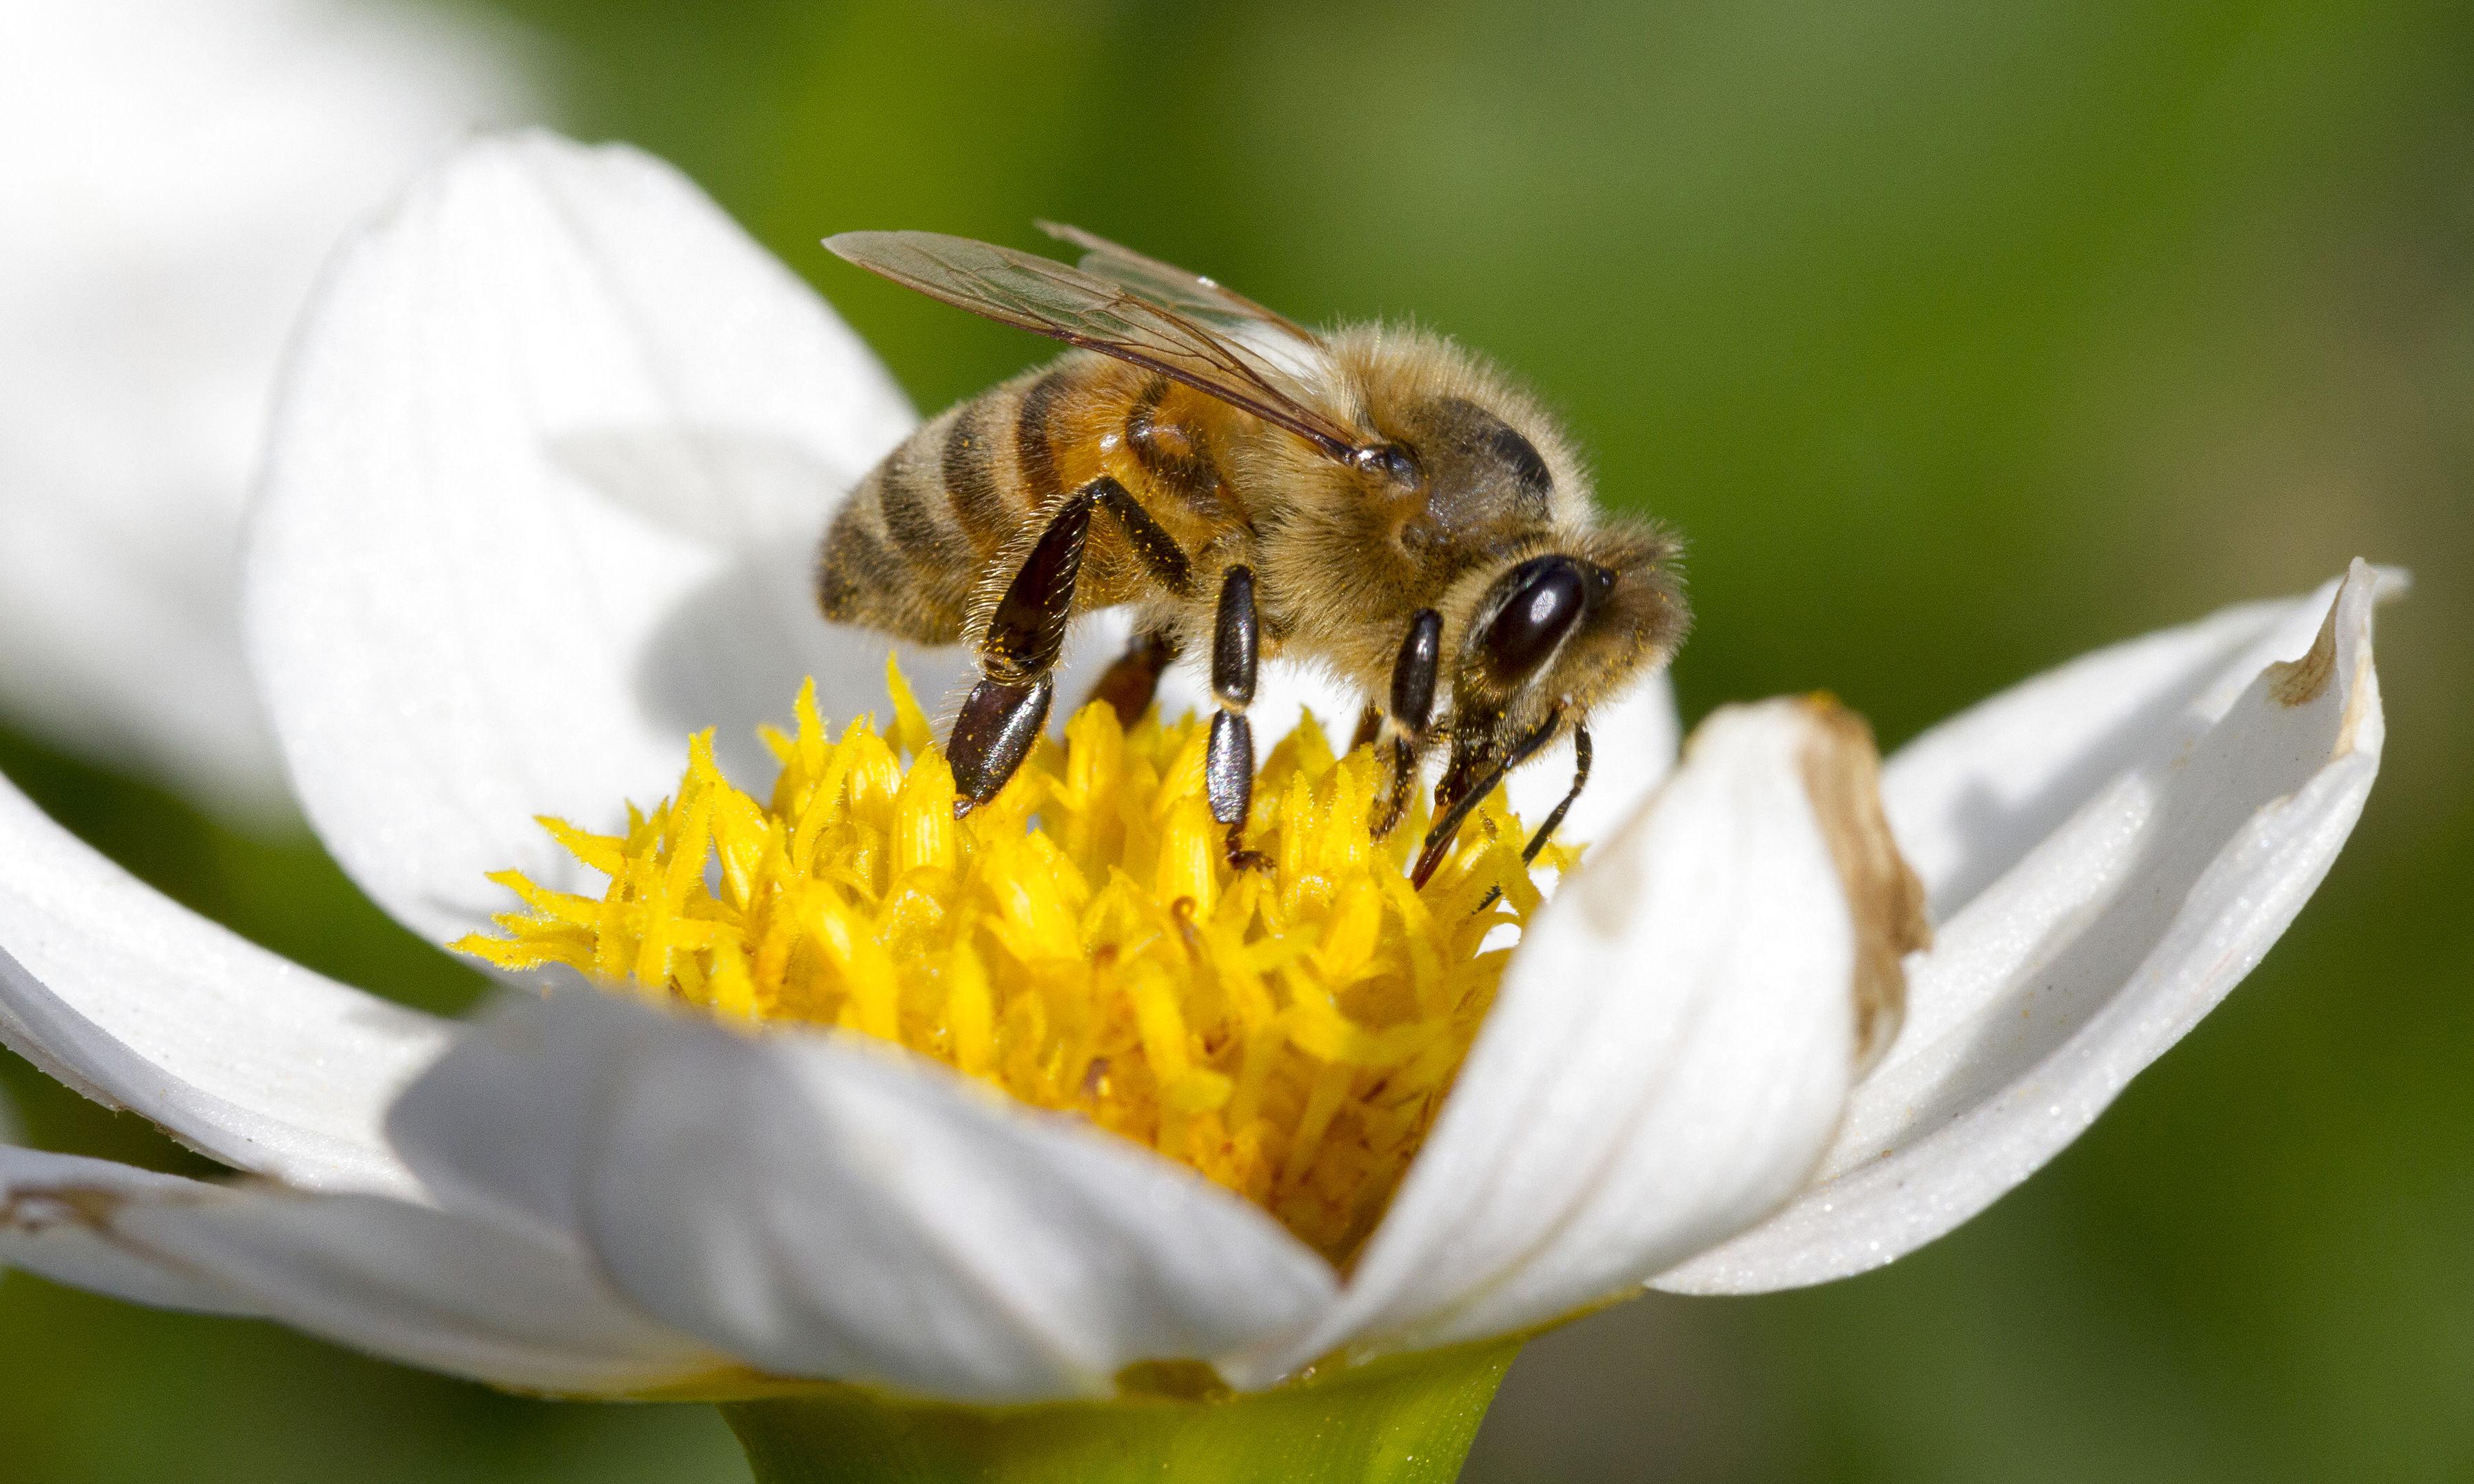 EU-Kommissionen har vedtaget et skærpet forbud mod såkaldte neonics, som er skadelige for bier.